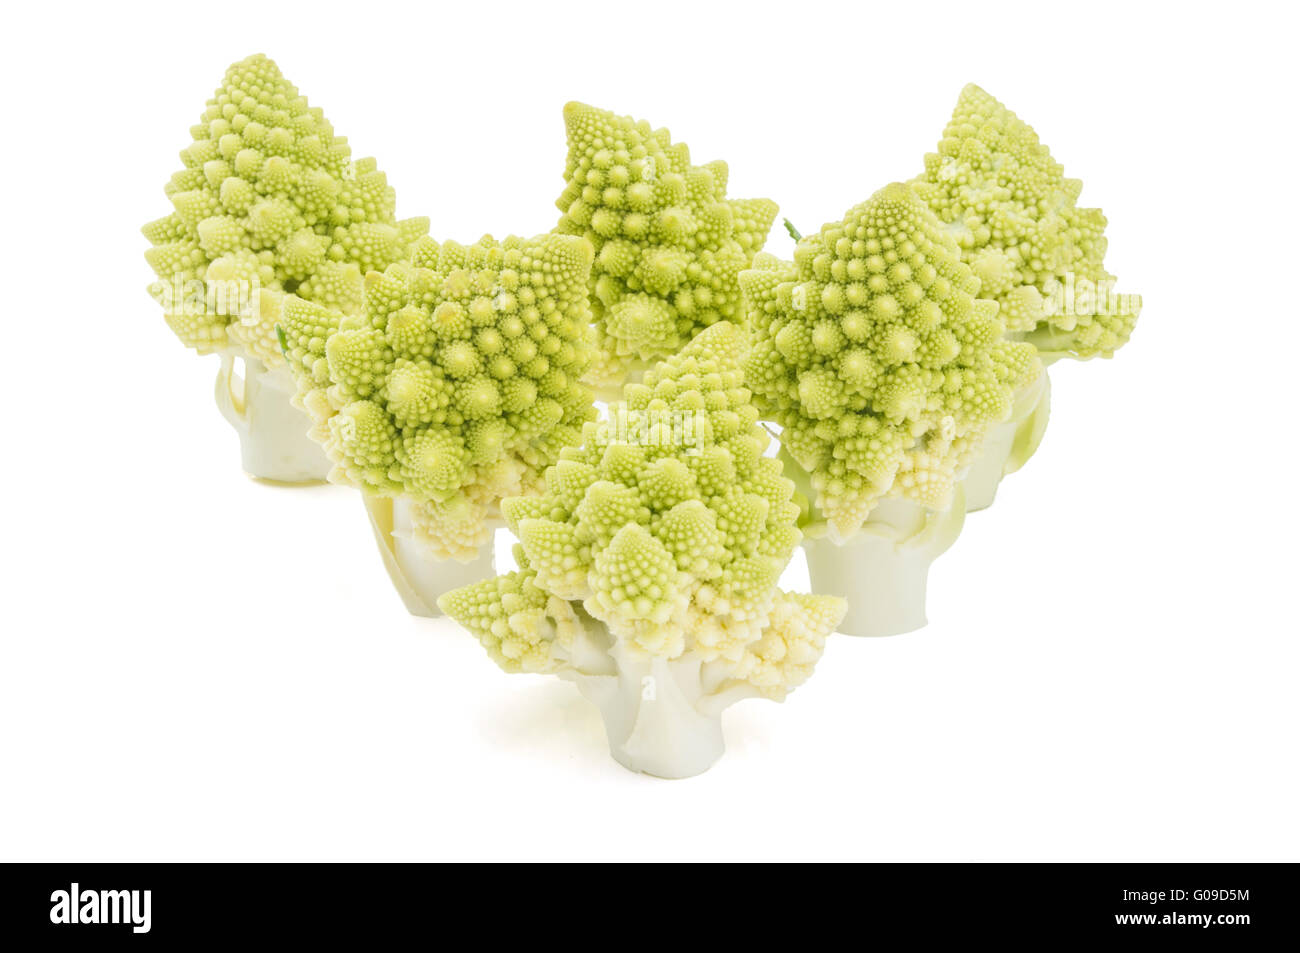 Le brocoli romanesco fraîchement coupé (Brassica oleracea) morceaux sur un fond blanc Banque D'Images